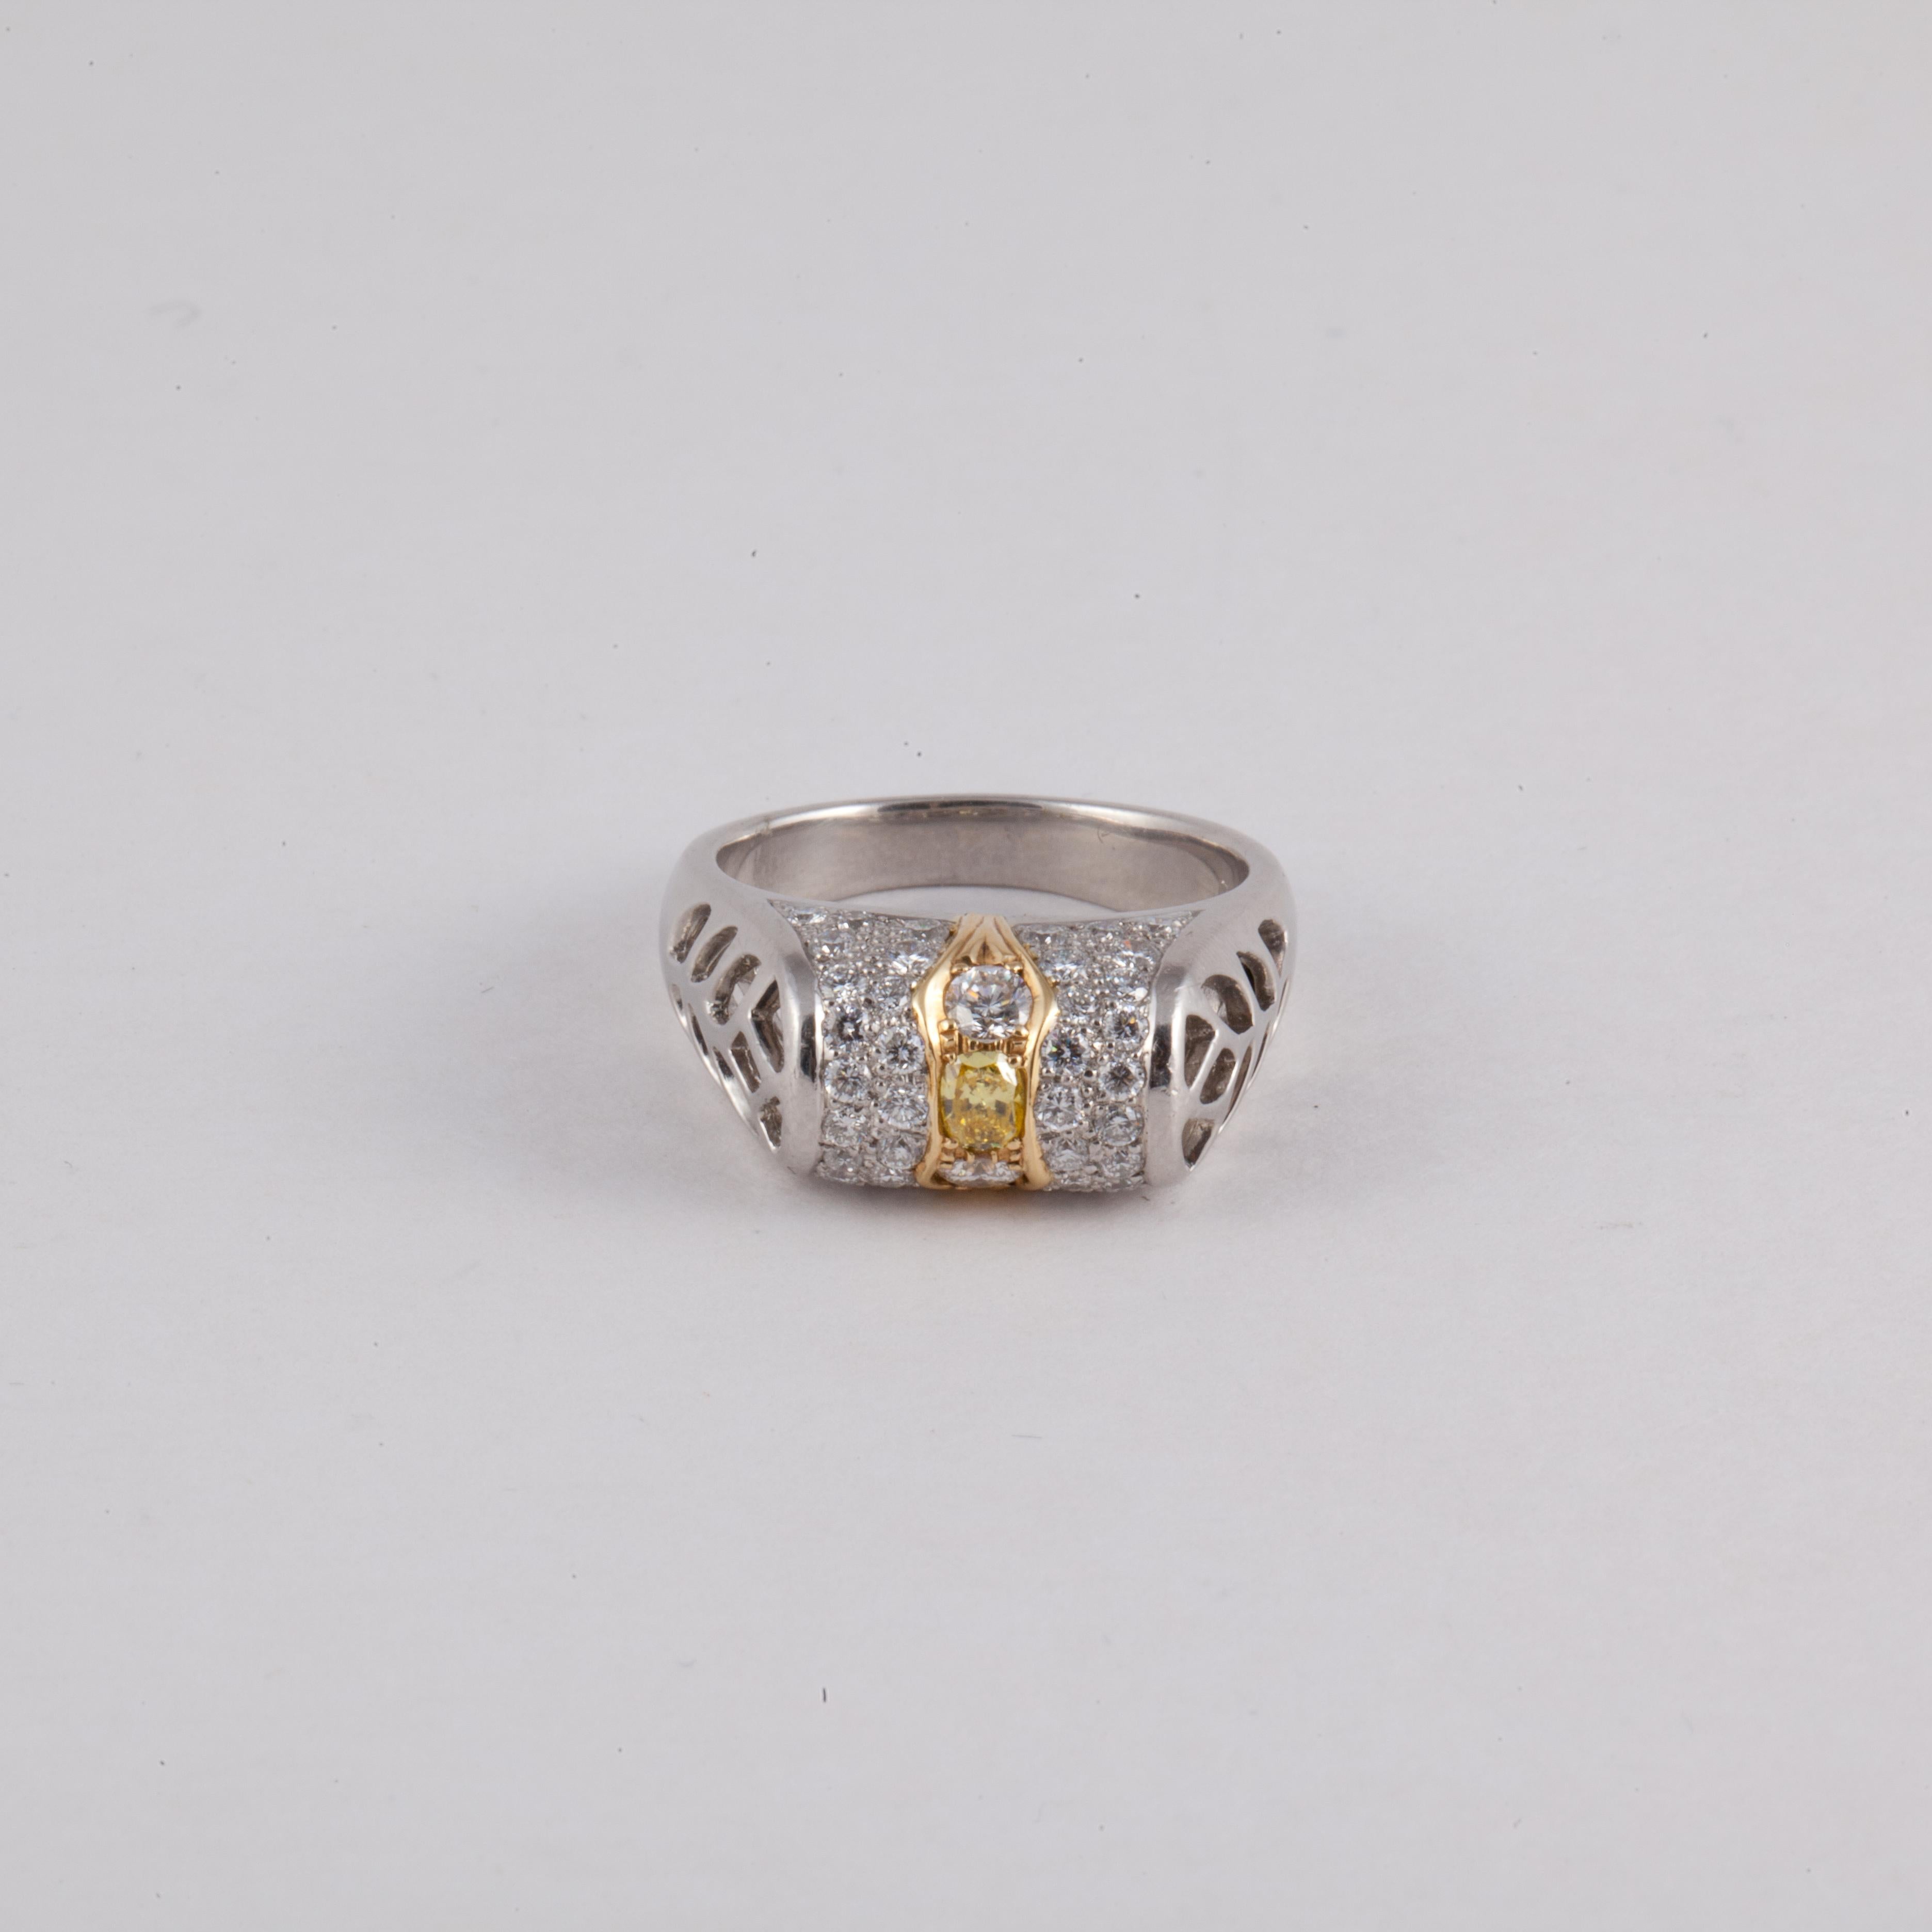 Ring aus Platin mit Streifen aus 18 Karat Gelbgold auf der Oberseite mit einem ovalen kanarischen Diamanten von 0,10 Karat.  Um den kanarischen Diamanten herum befinden sich 44 runde Diamanten mit einem Gesamtkaratgewicht von 0,85. Die